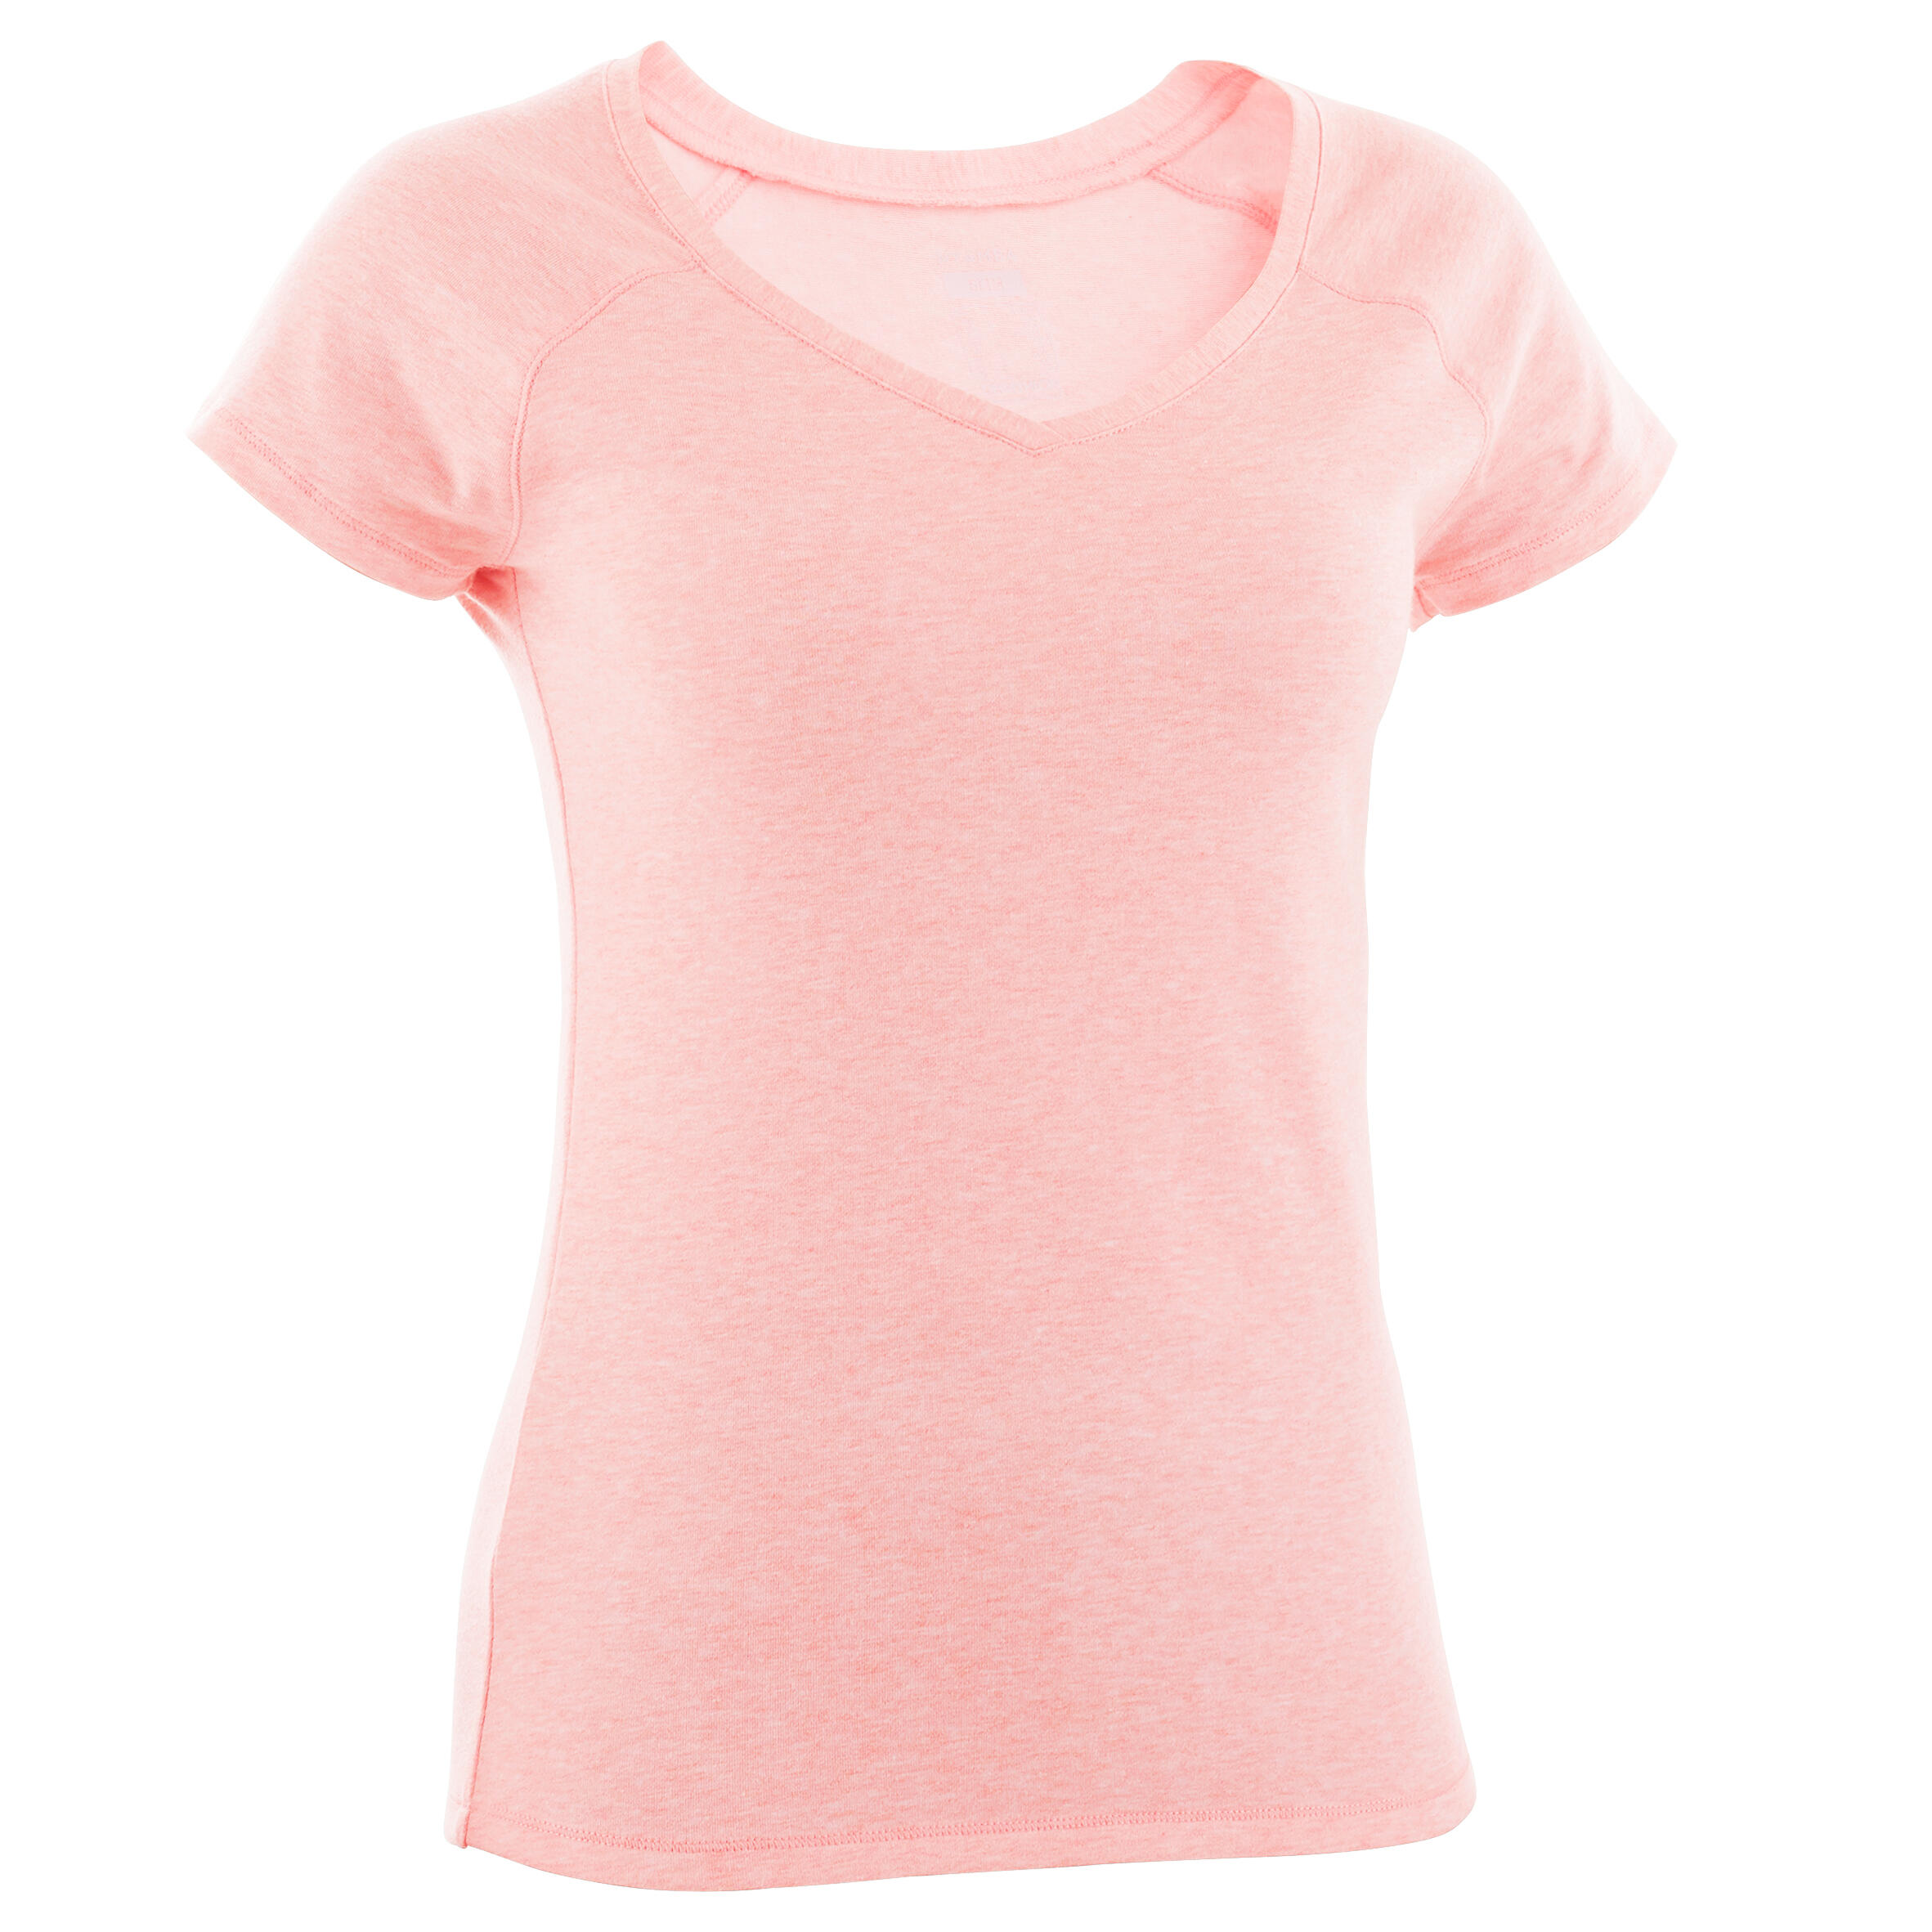 Women's Fitness V-Neck T-Shirt 500 - Pink 2/3